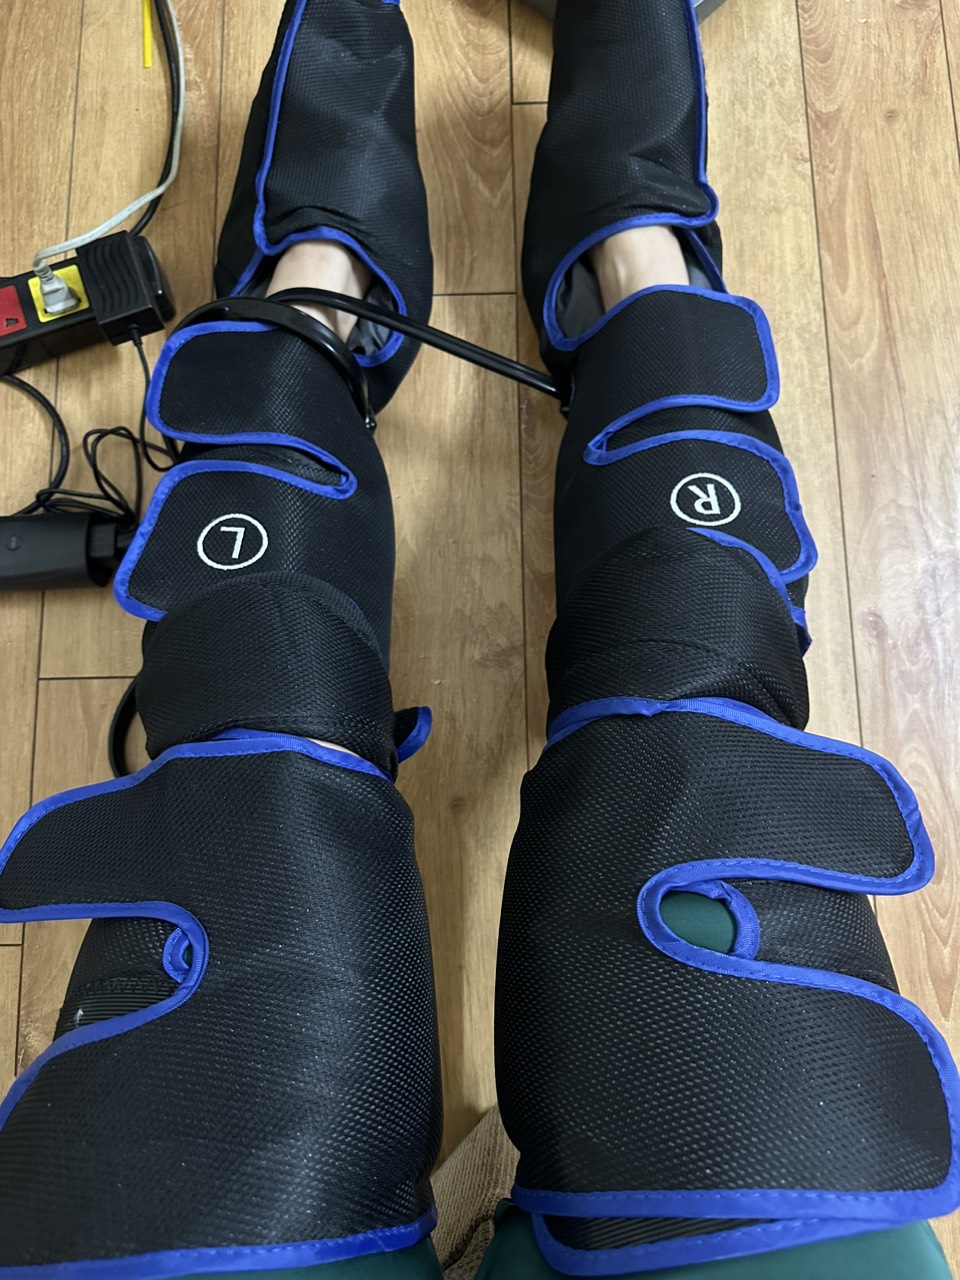 Máy massage chân, bắp chân, đầu gối, đùi nhập khẩu Nhật Bản Mitech bảo hành chính hãng 12 tháng